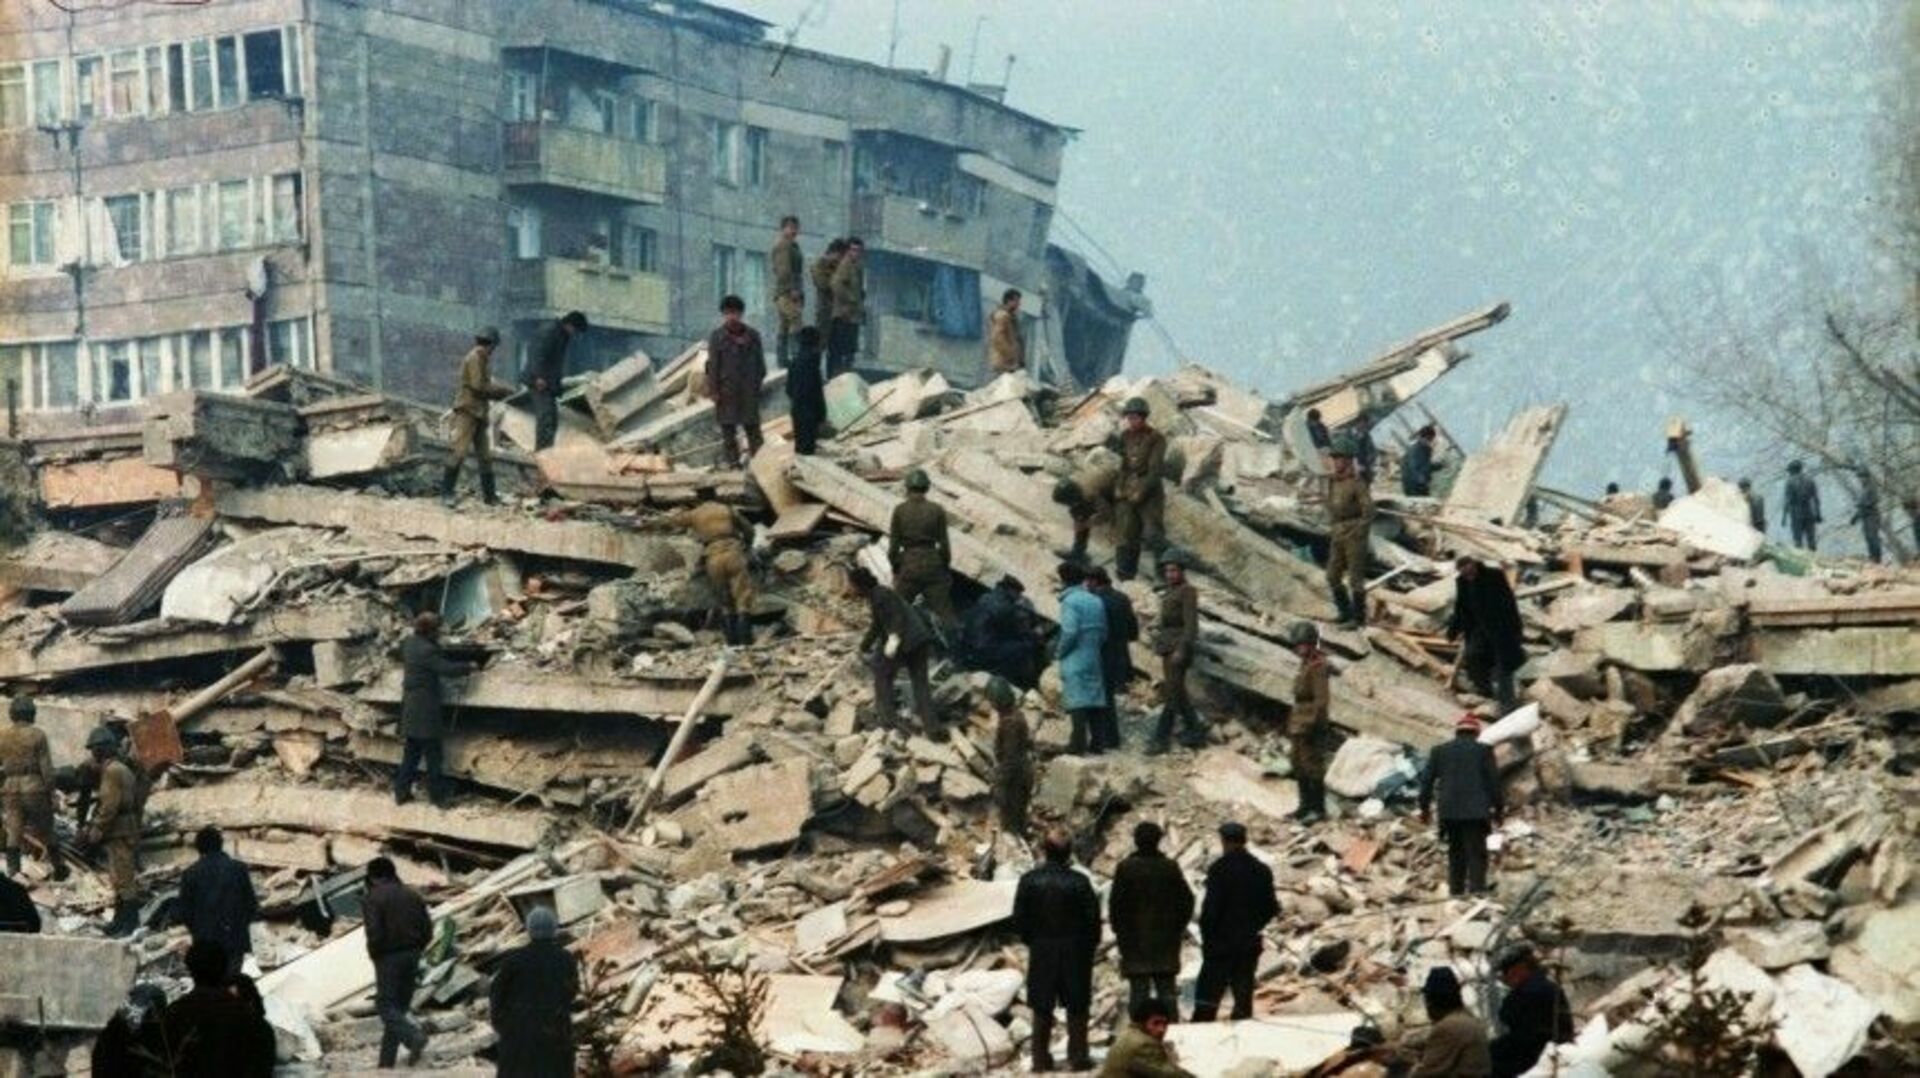 Землетрясение в этом году. Землетрясение в Спитаке в Армении 1988. Землетрясение в Армении 1988 Ленинакан. Землетрясение 7 декабря 1988 Армения Ленинакан.